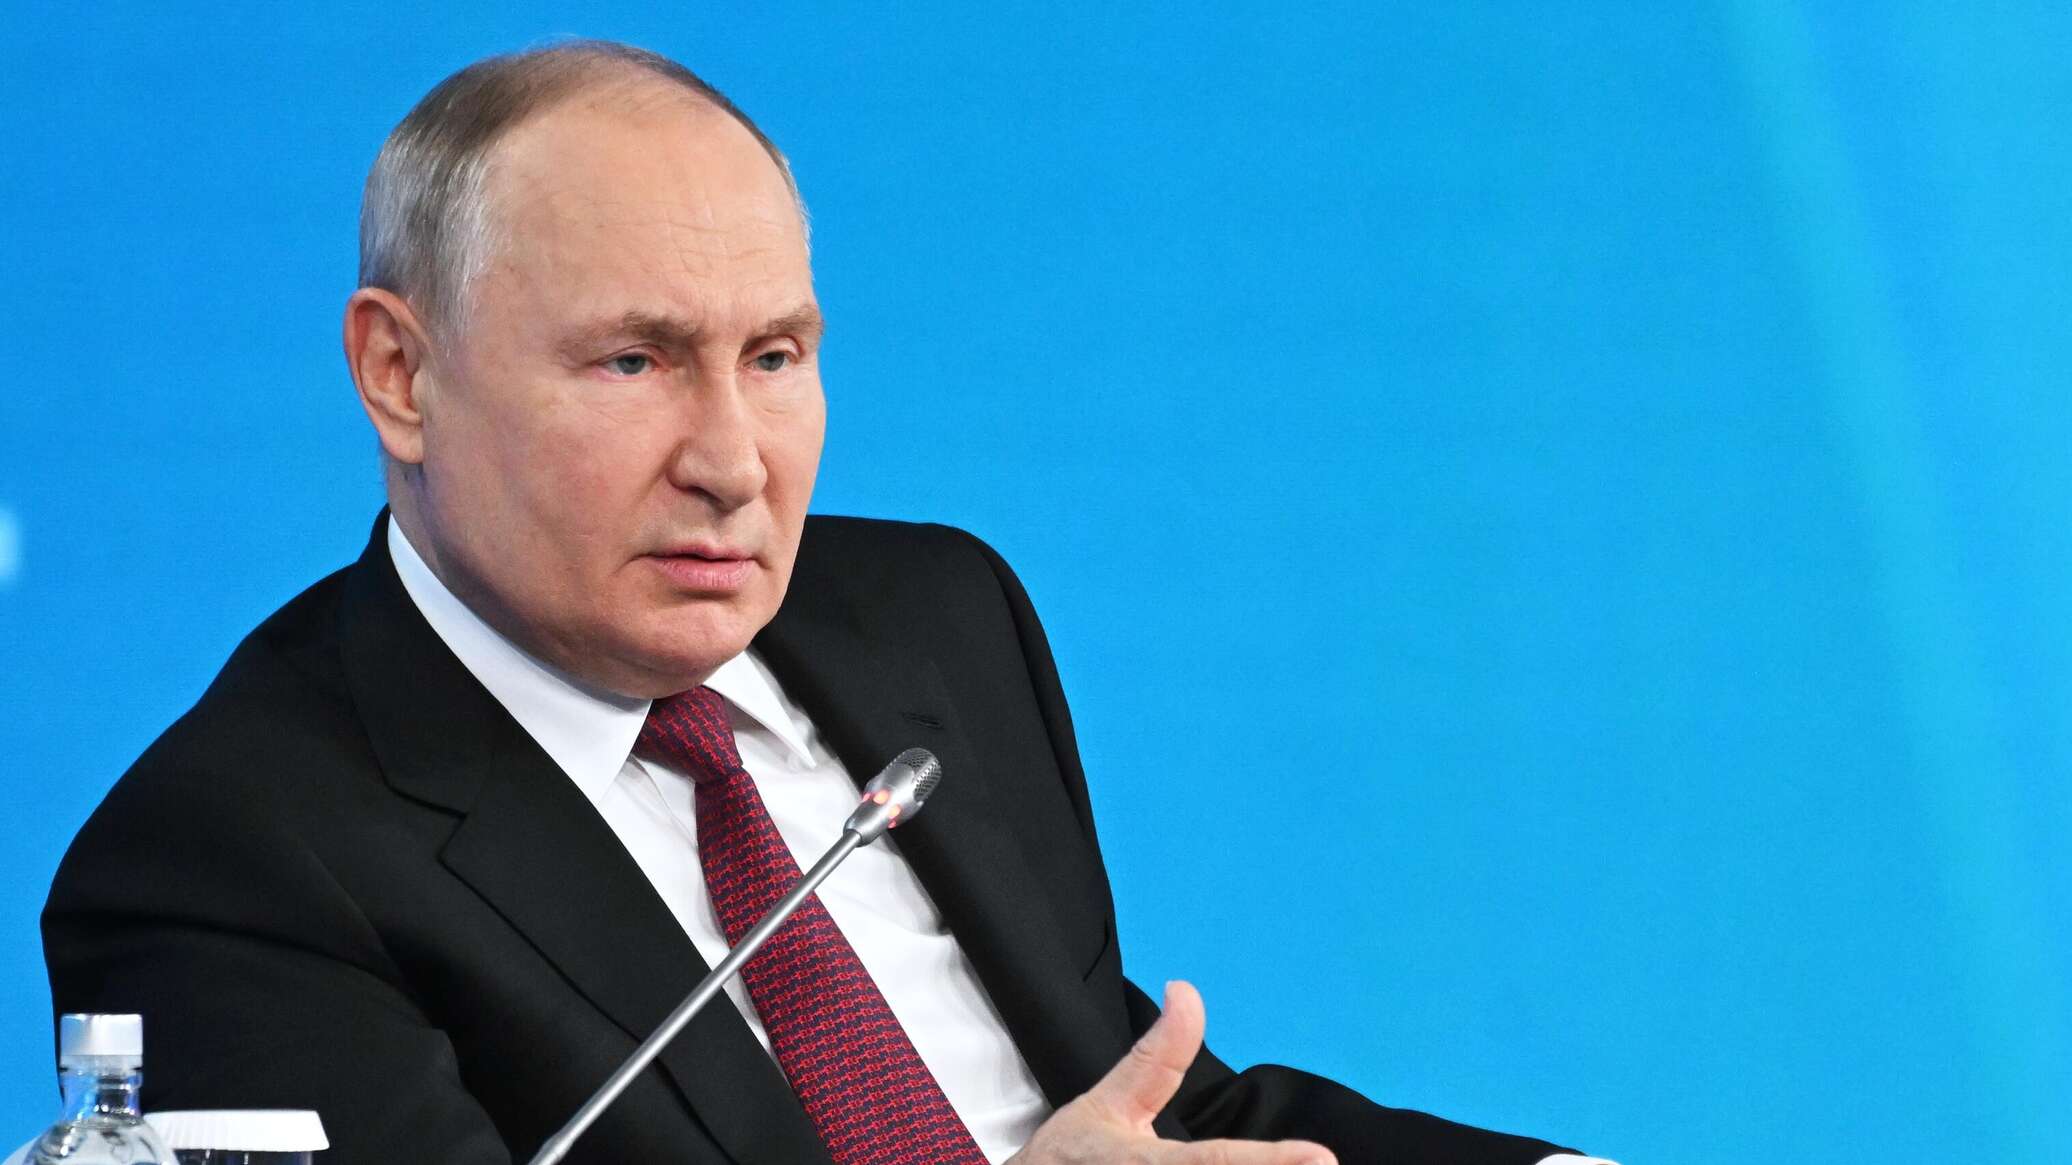 إعلام أمريكي يكشف عن خطوة بوتين التي "هزت نظام واشنطن"